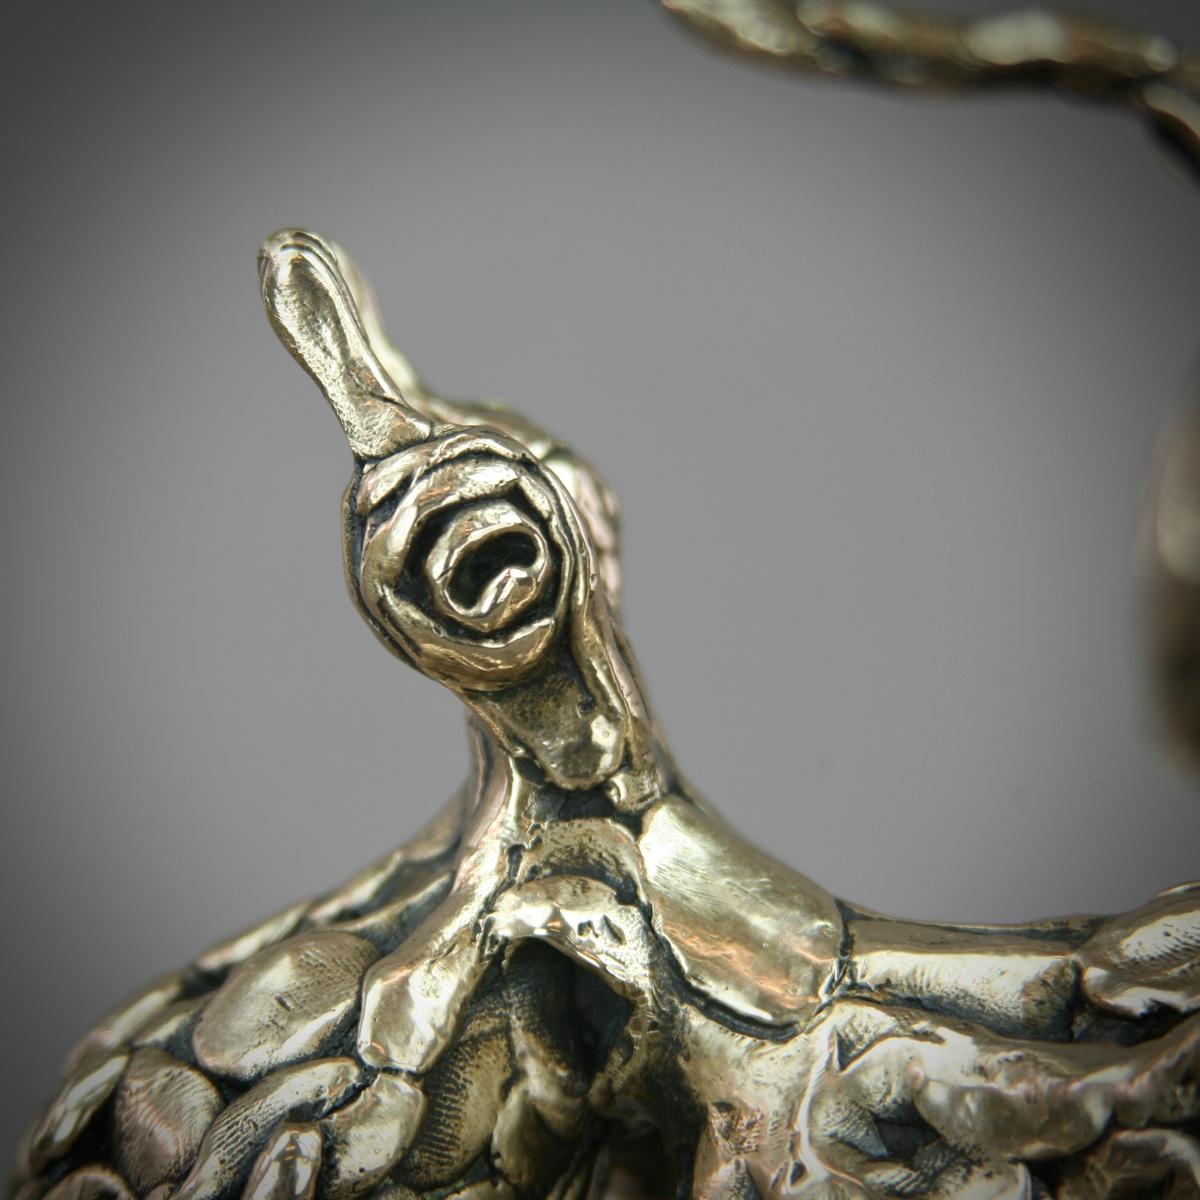 Oktopus Bronzeskulptur, Limitierte Auflage von  15 ist eine wunderschöne Skulptur von Andrzej Azymczyk. Es ist wunderschön, einzigartig, kompliziert und sehr detailliert. 

Andrzej schloss 2012 sein Studium der Bildenden Künste an der Akademie der